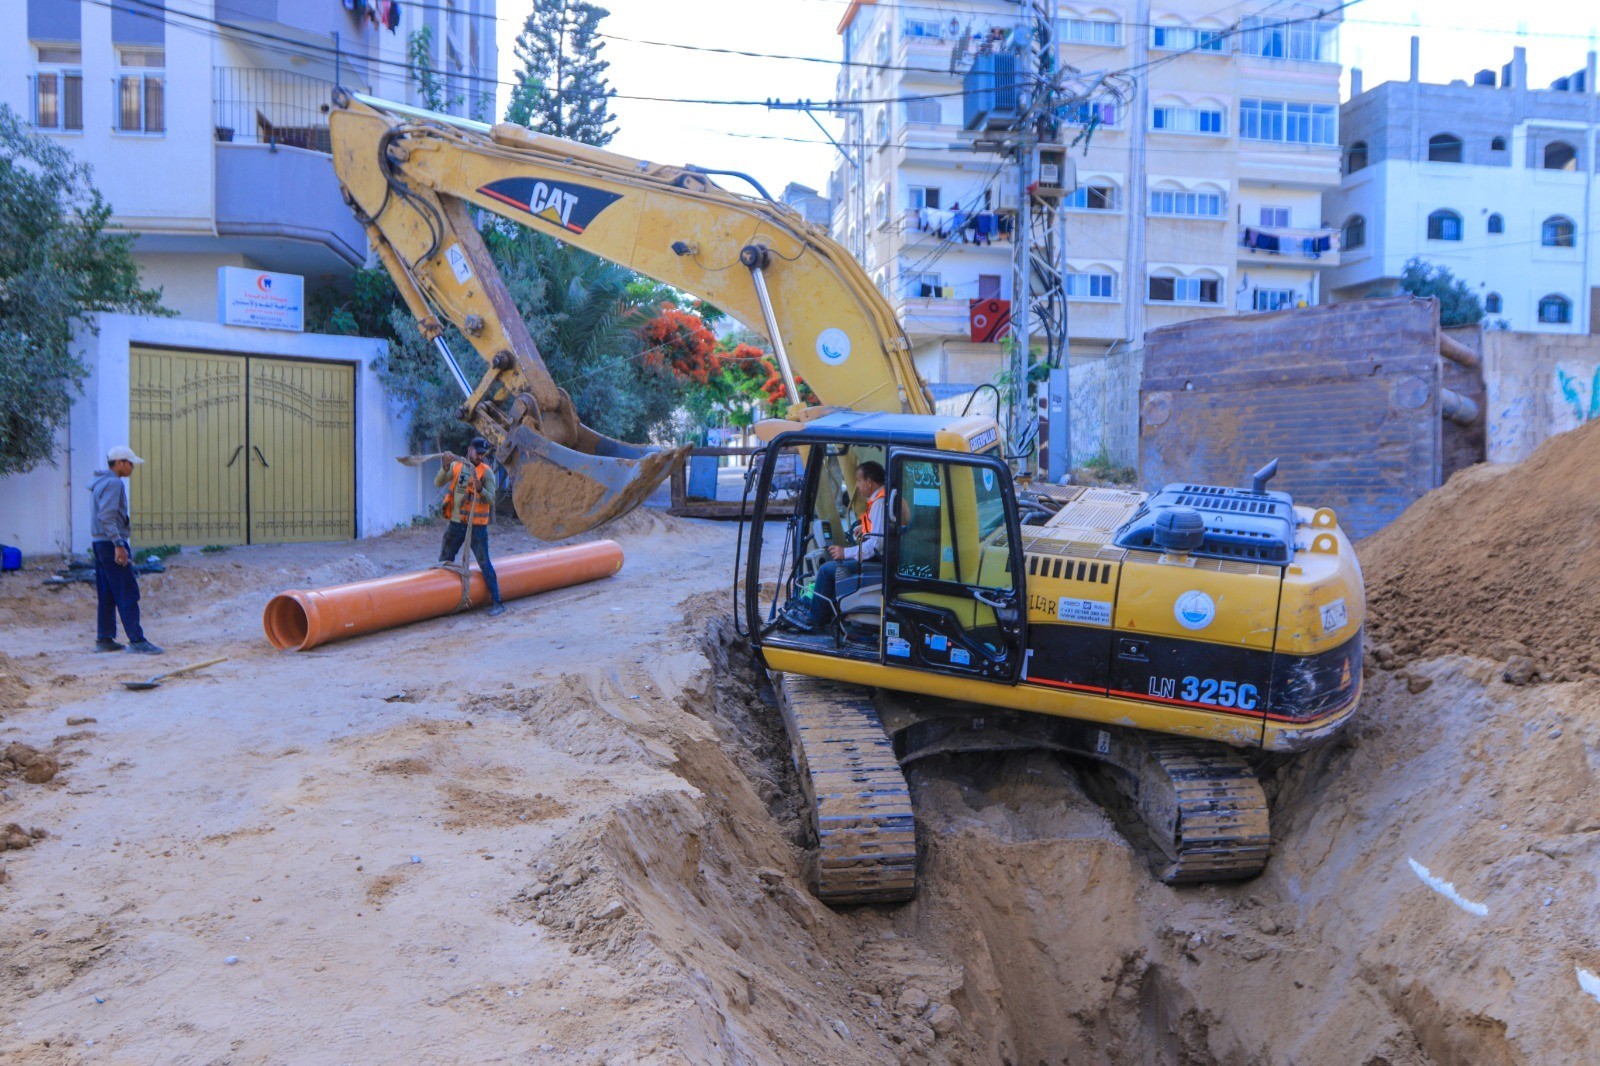 بلدية غزّة تبدأ بتمديد خط صرف صحي جديد غرب حي تل الهوا 